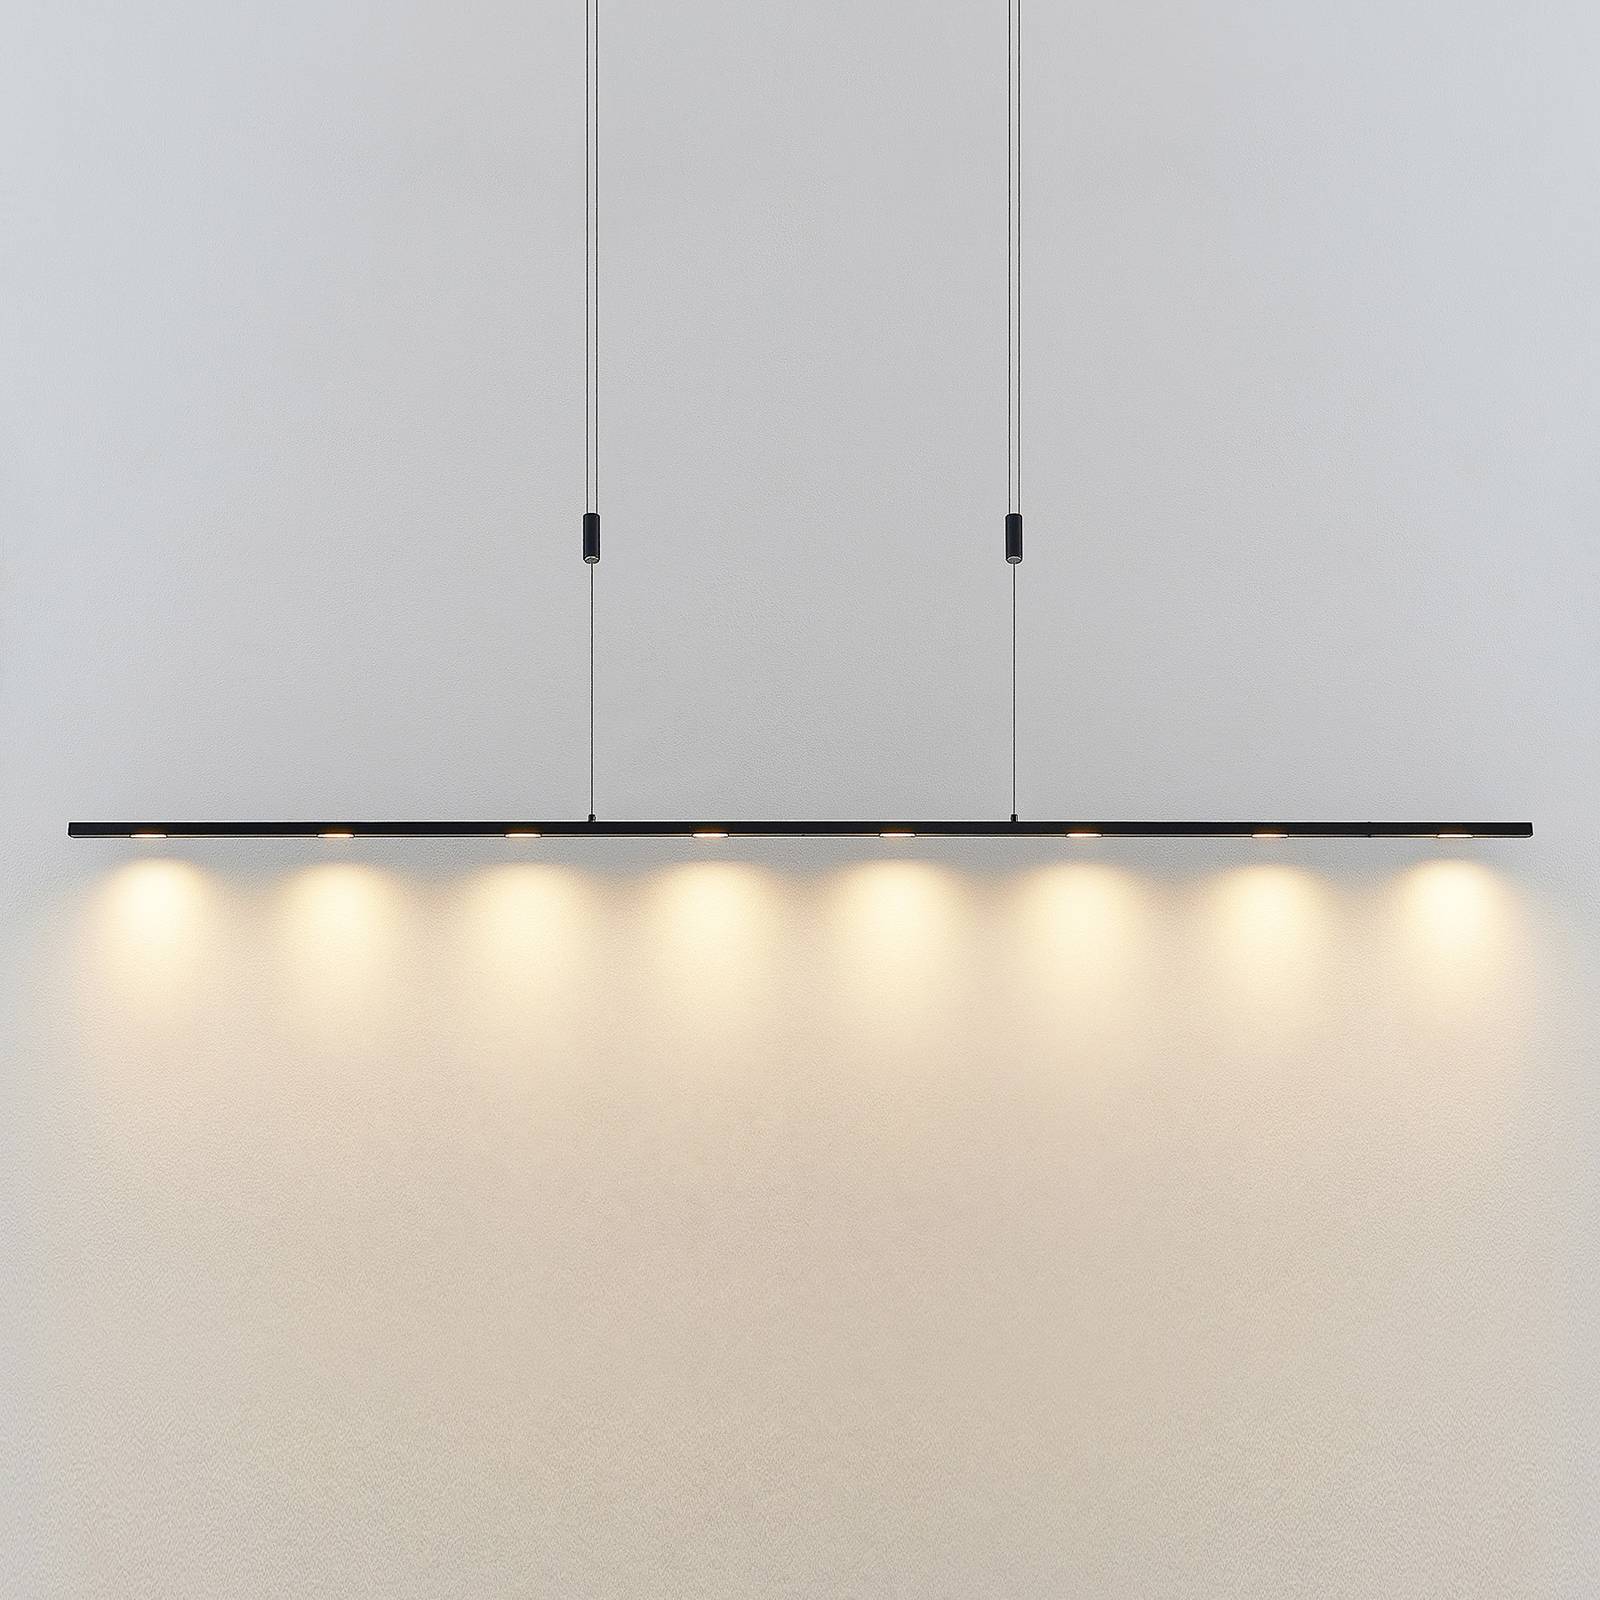 Lucande Stakato LED-hengelampe 8 lk 180 cm lang